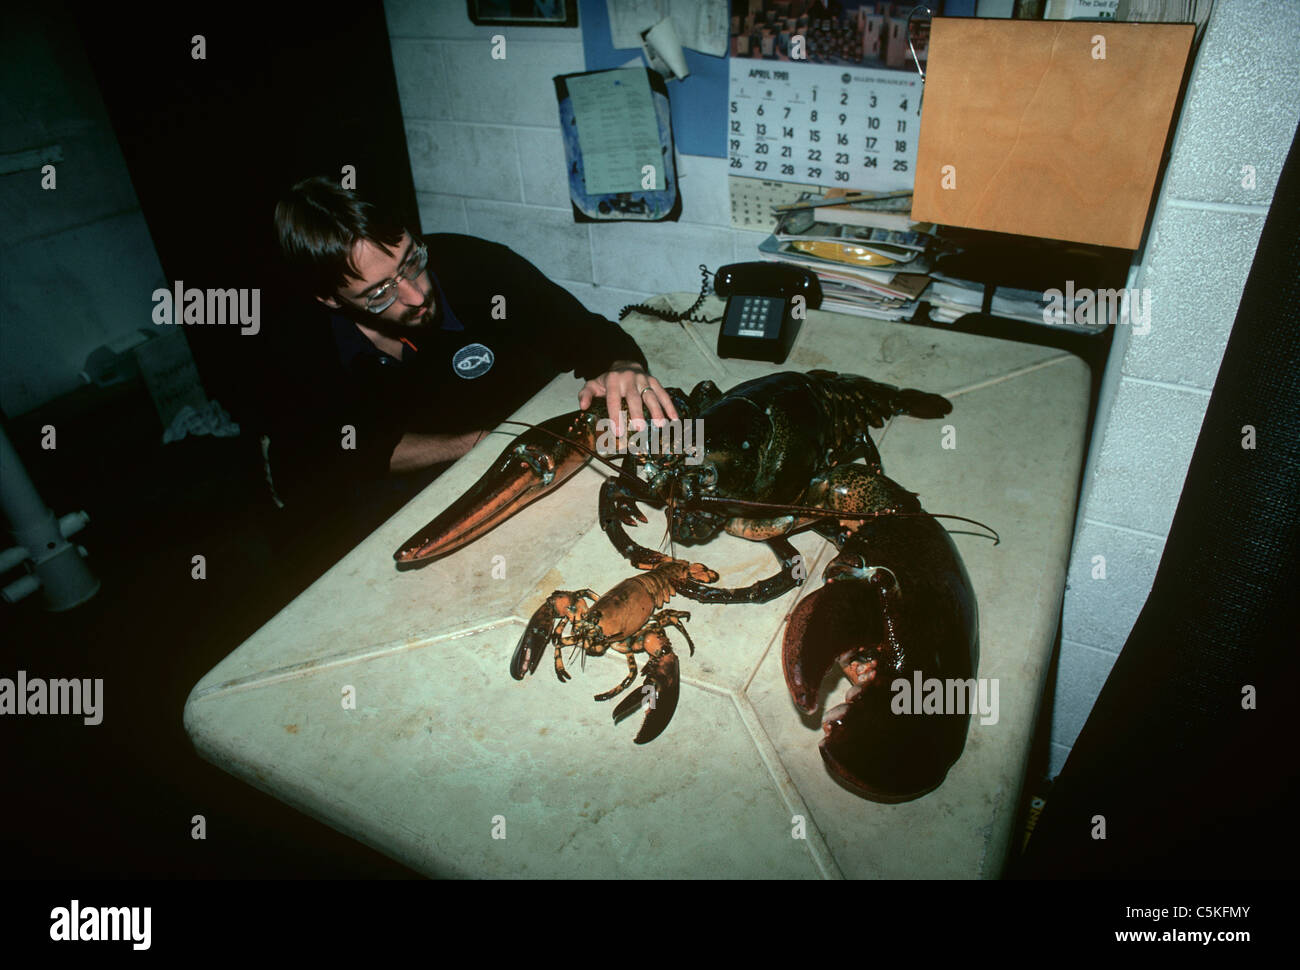 Uno scienziato confrontando un 35 pound American Astici (Homarus americanus) ad una più piccola aragosta. New England Aquarium, STATI UNITI D'AMERICA Foto Stock